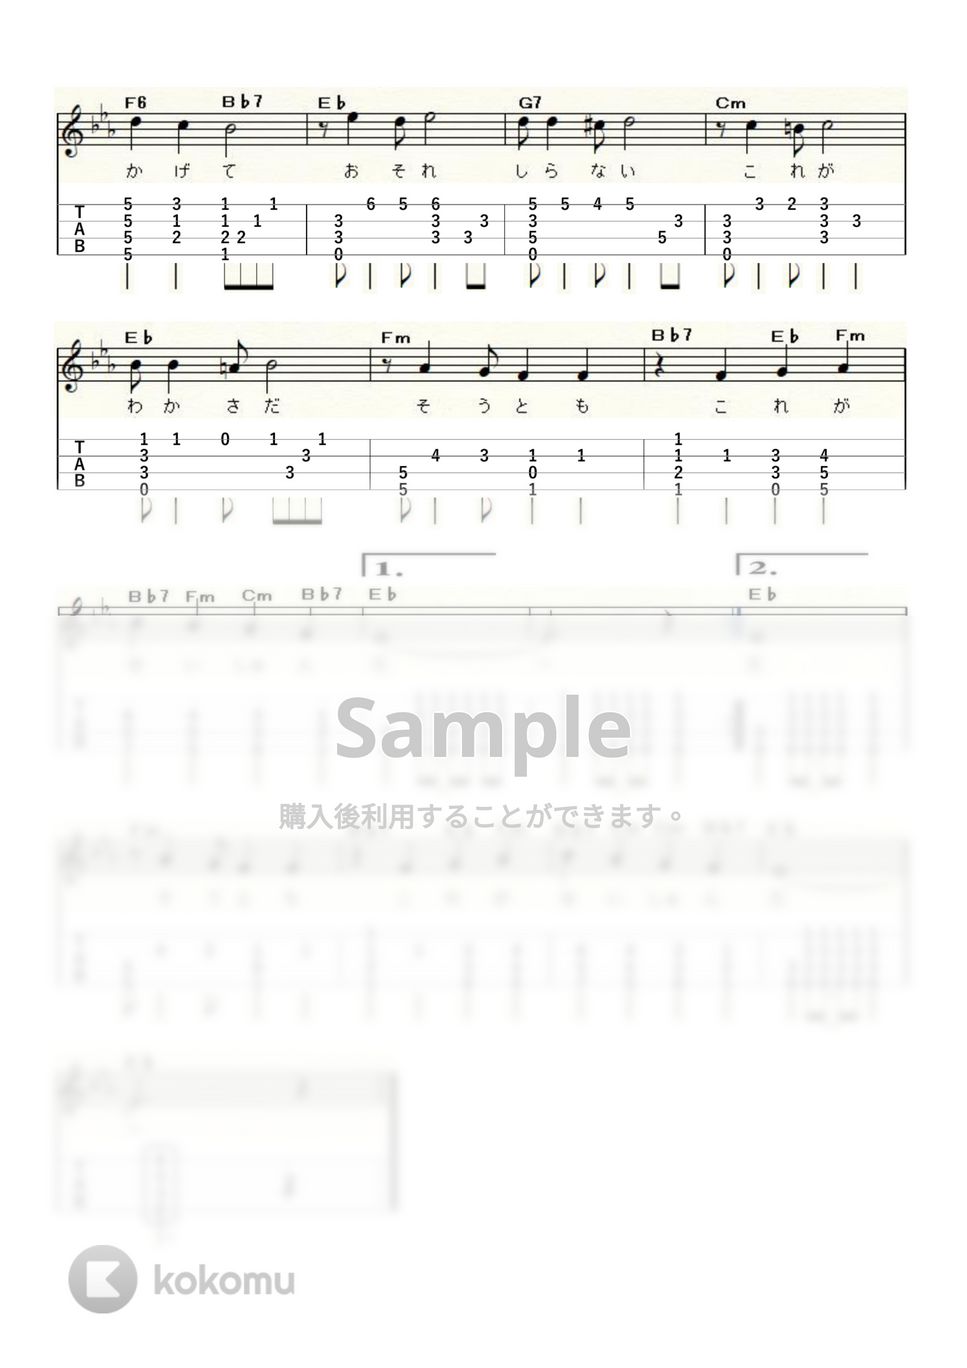 布施 明 - これが青春だ (ｳｸﾚﾚｿﾛ/High-G・Low-G/中級) by ukulelepapa